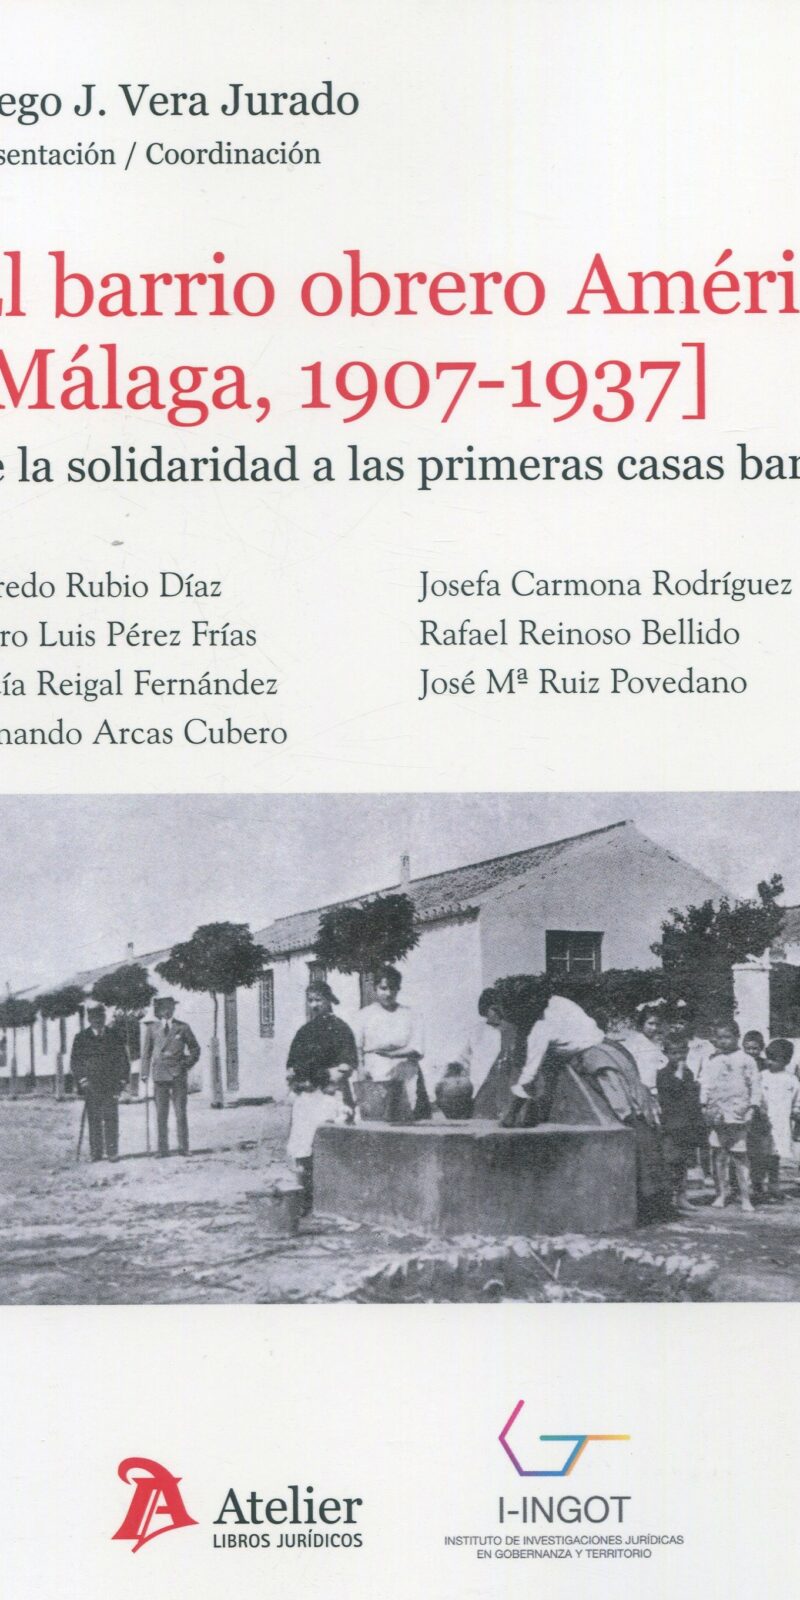 El barrio obrero América (Málaga, 1907-1937) De la solidaridad a las primeras casas baratas 9788419773258